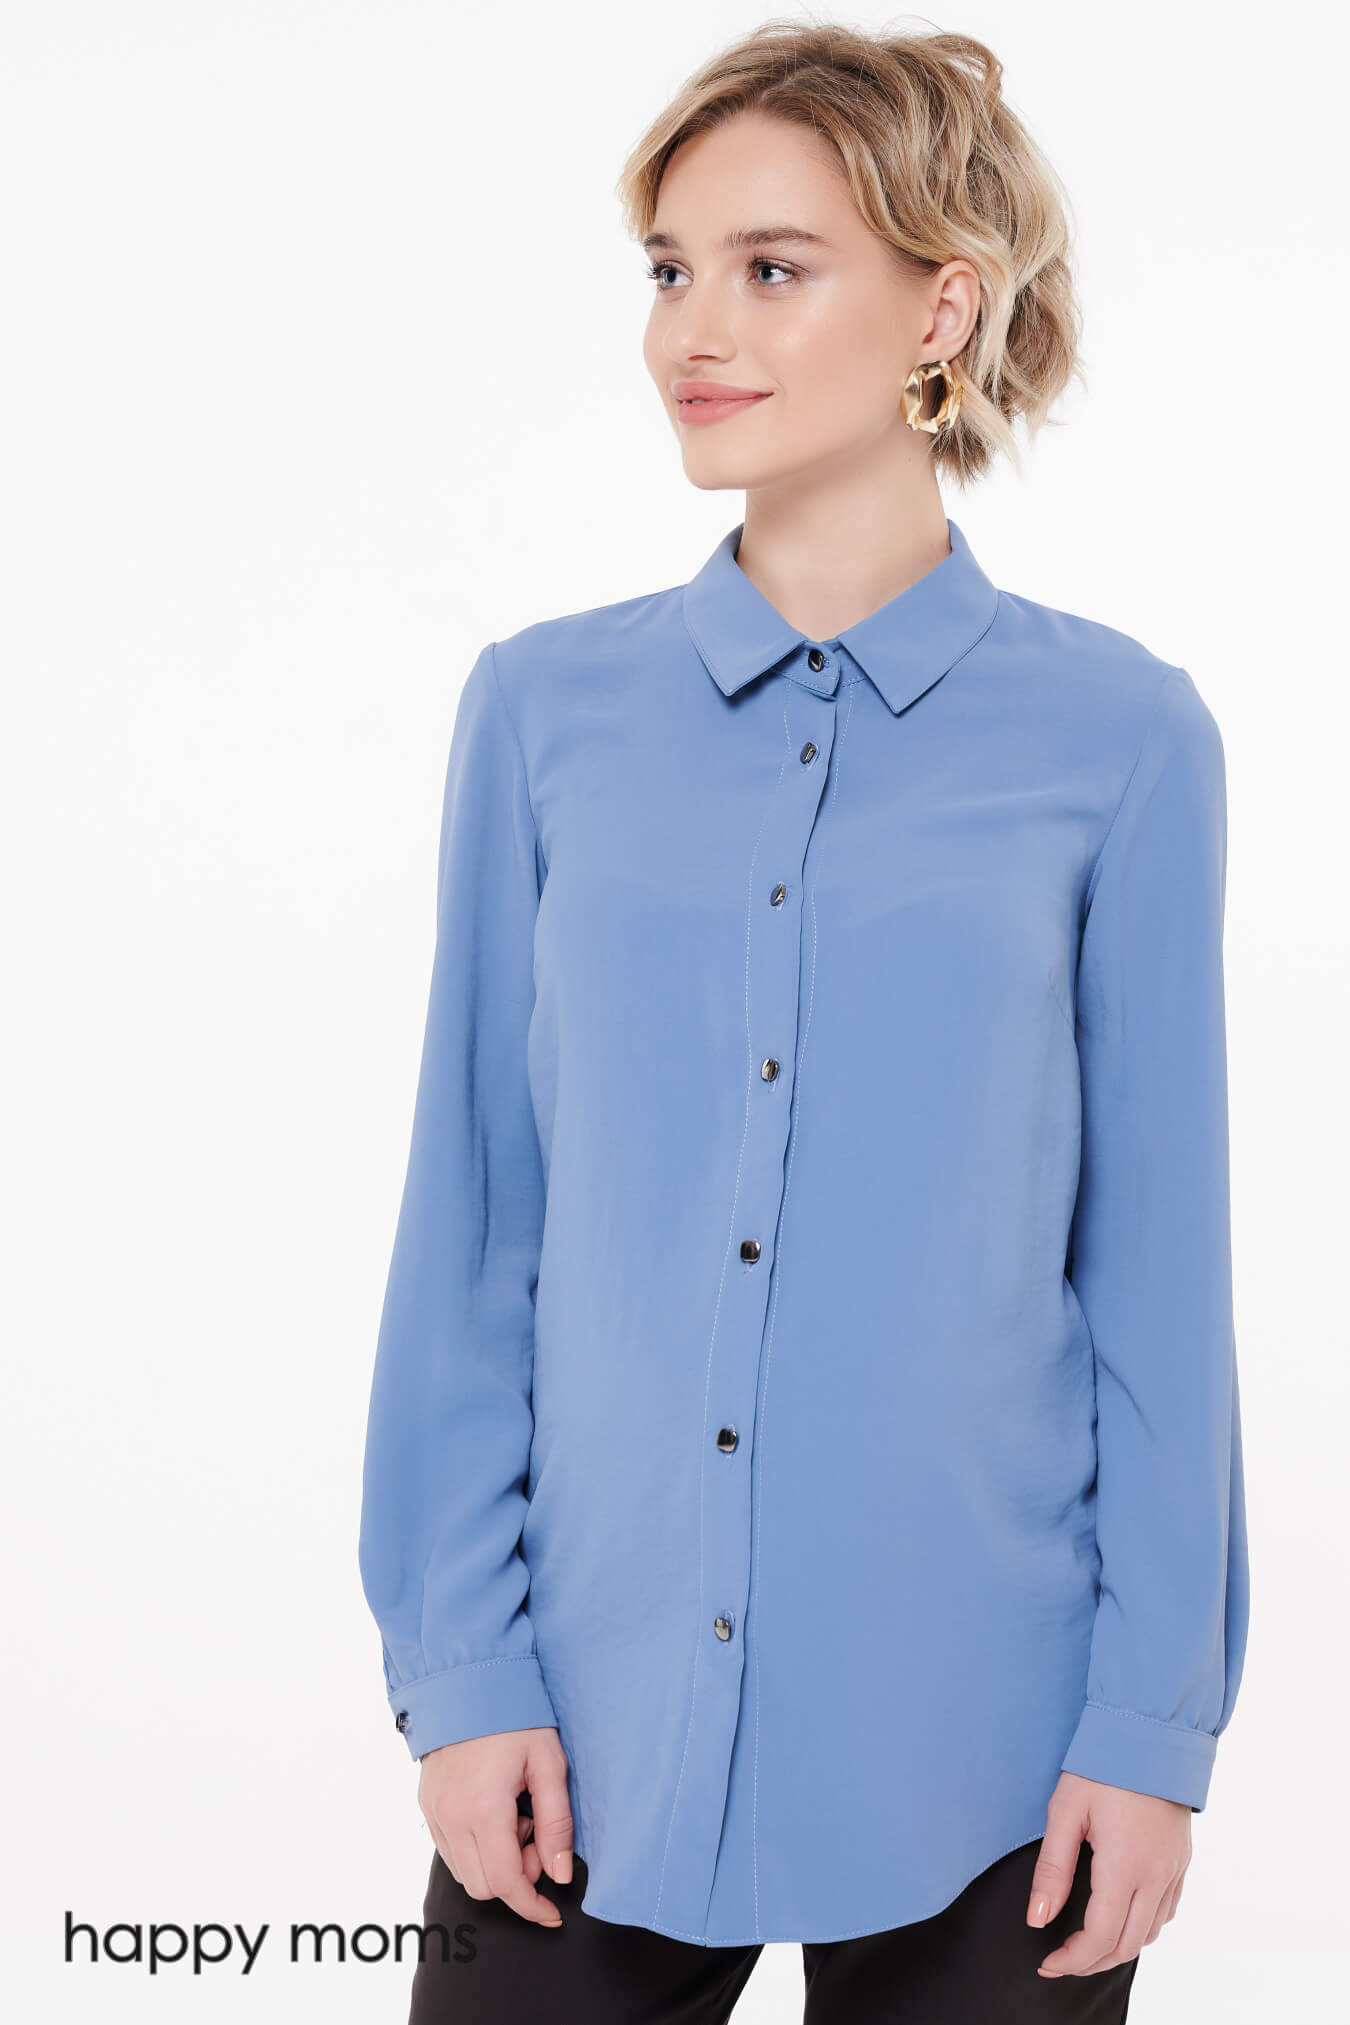 Блузка для беременных женщин офисная классическая блуза рубашка женская одежда для будущих мам / Happy Moms